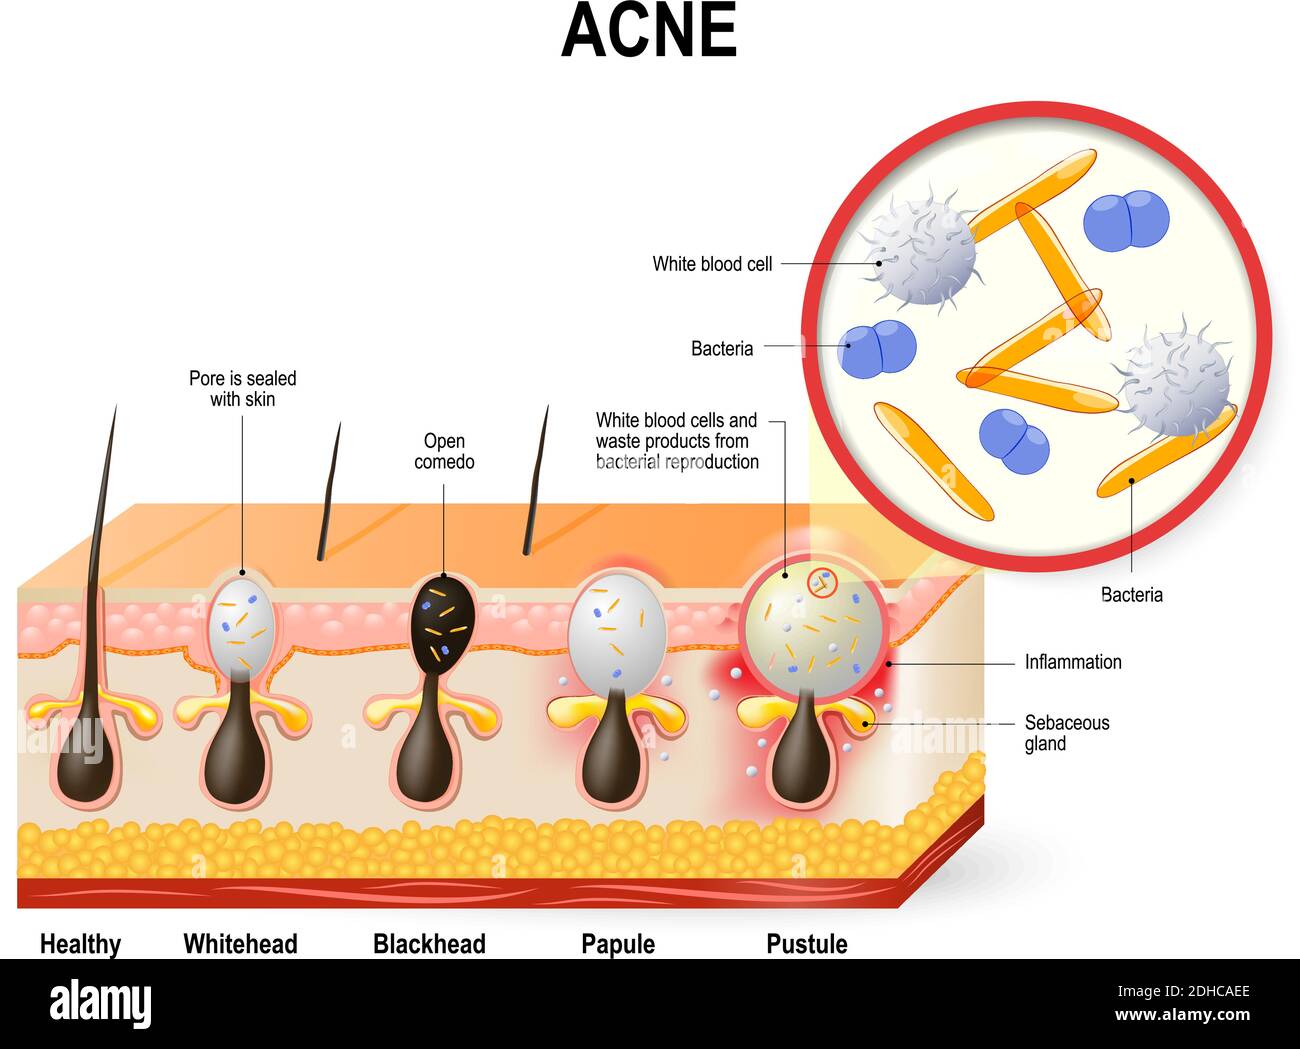 Vulgaris o pimple dell'acne. Il sebo e le cellule morte della pelle nel poro intasato favoriscono la crescita di un certo batterio Illustrazione Vettoriale